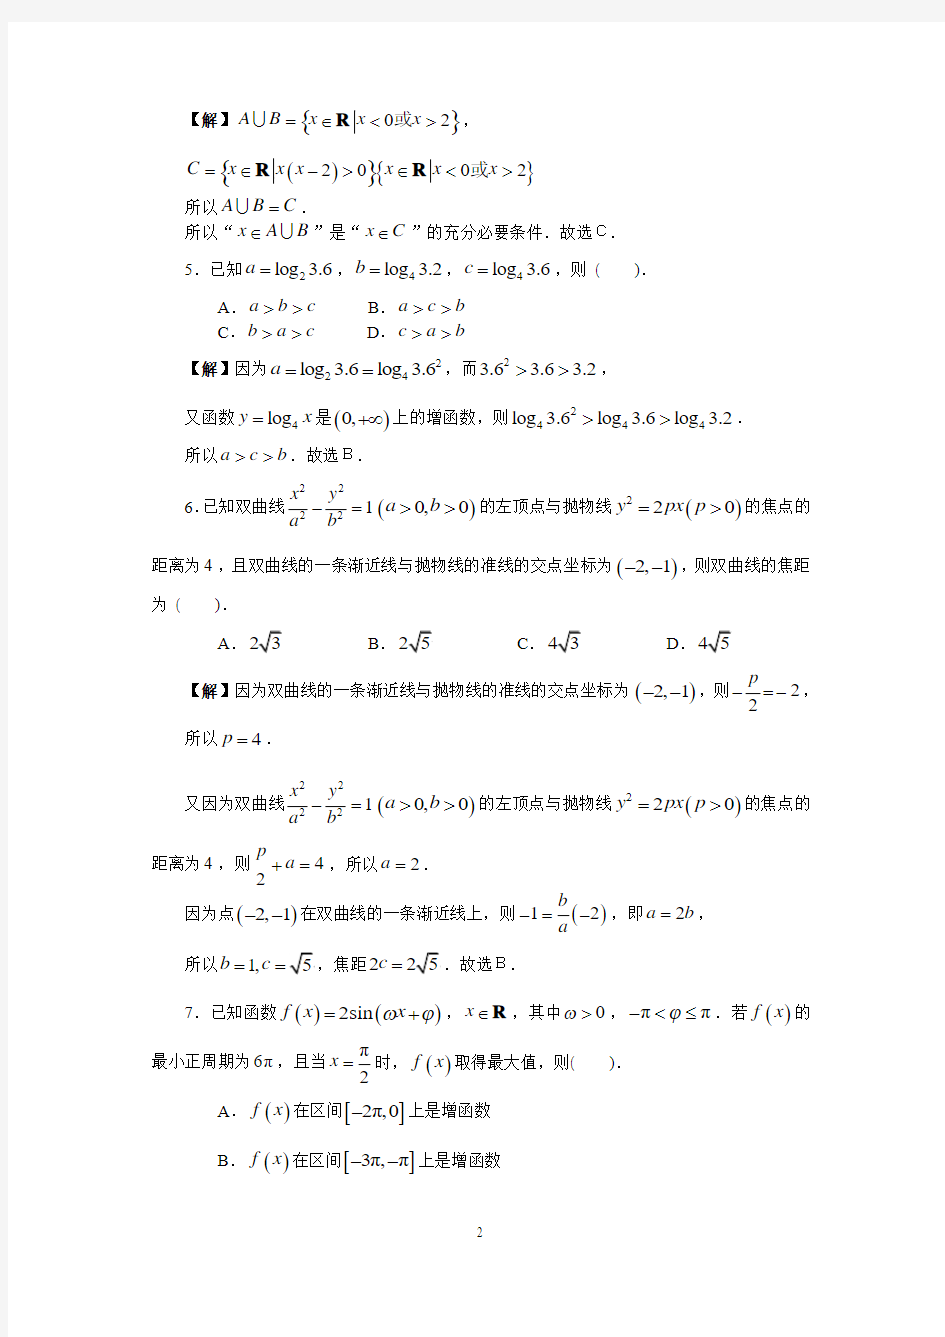 2011年高考天津市数学试卷-文科(含详细答案)